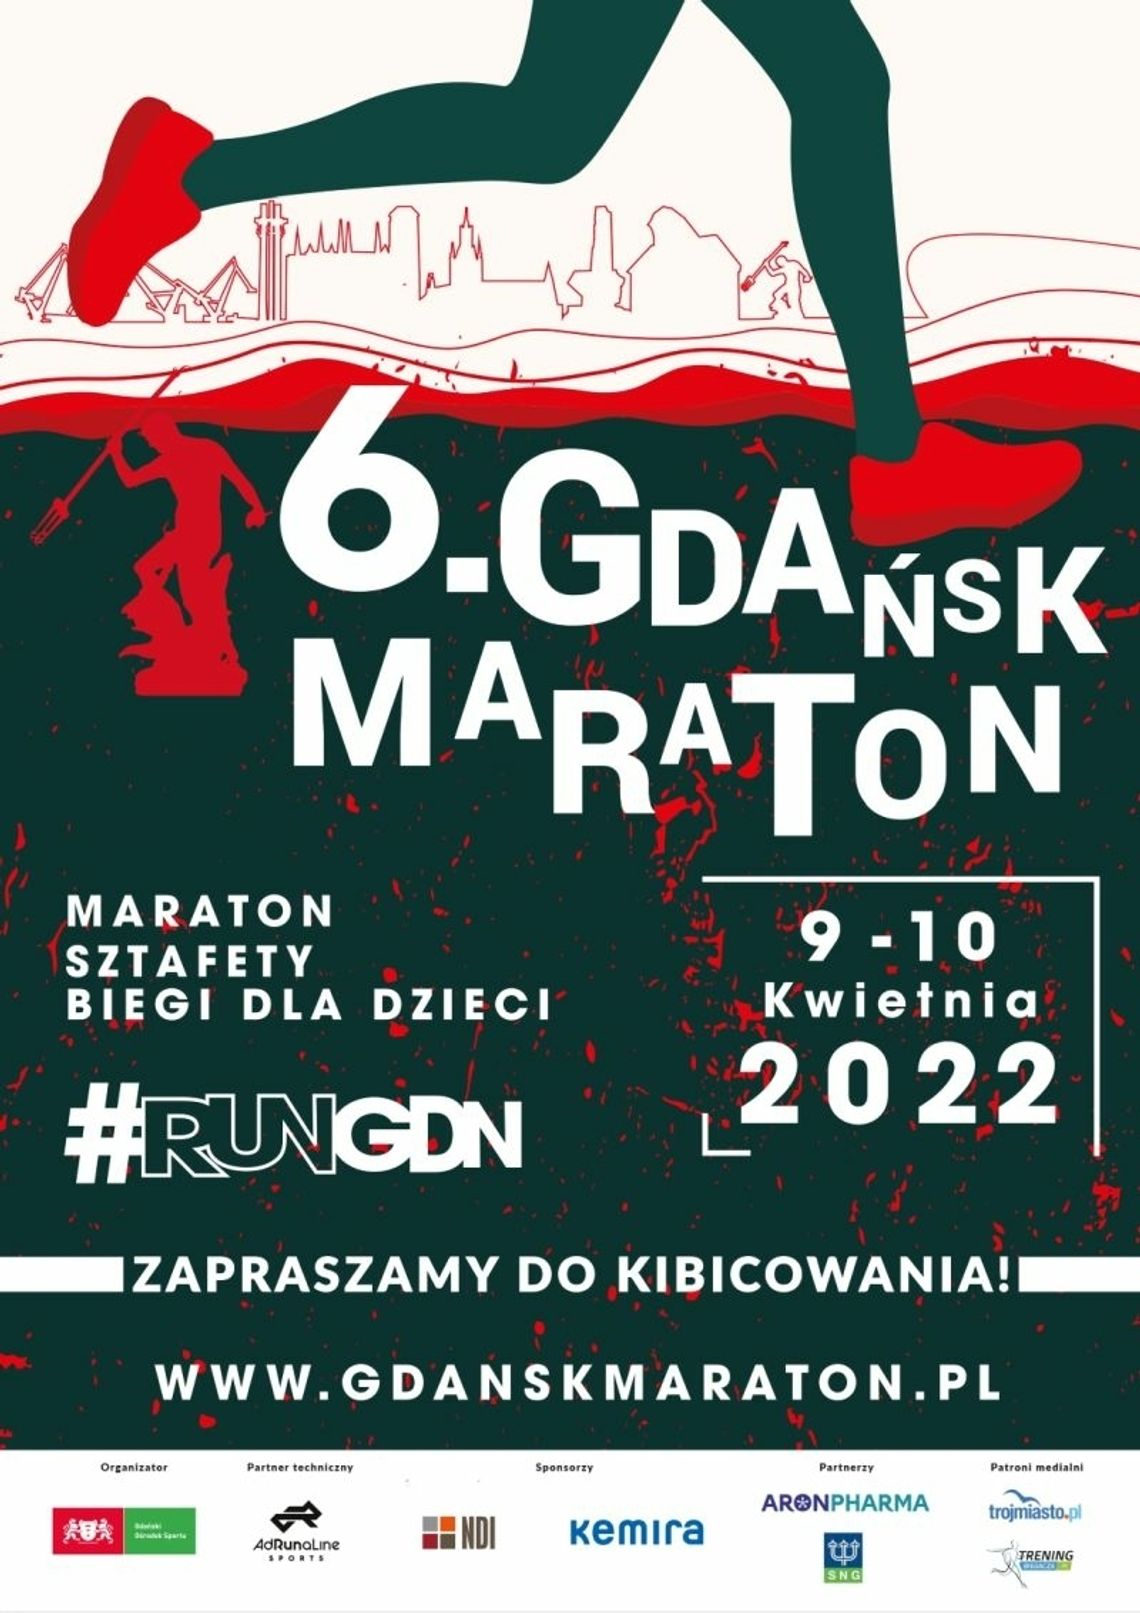 Wielkie bieganie powraca w Gdańsku! VI Gdański Maraton już w najbliższy weekend